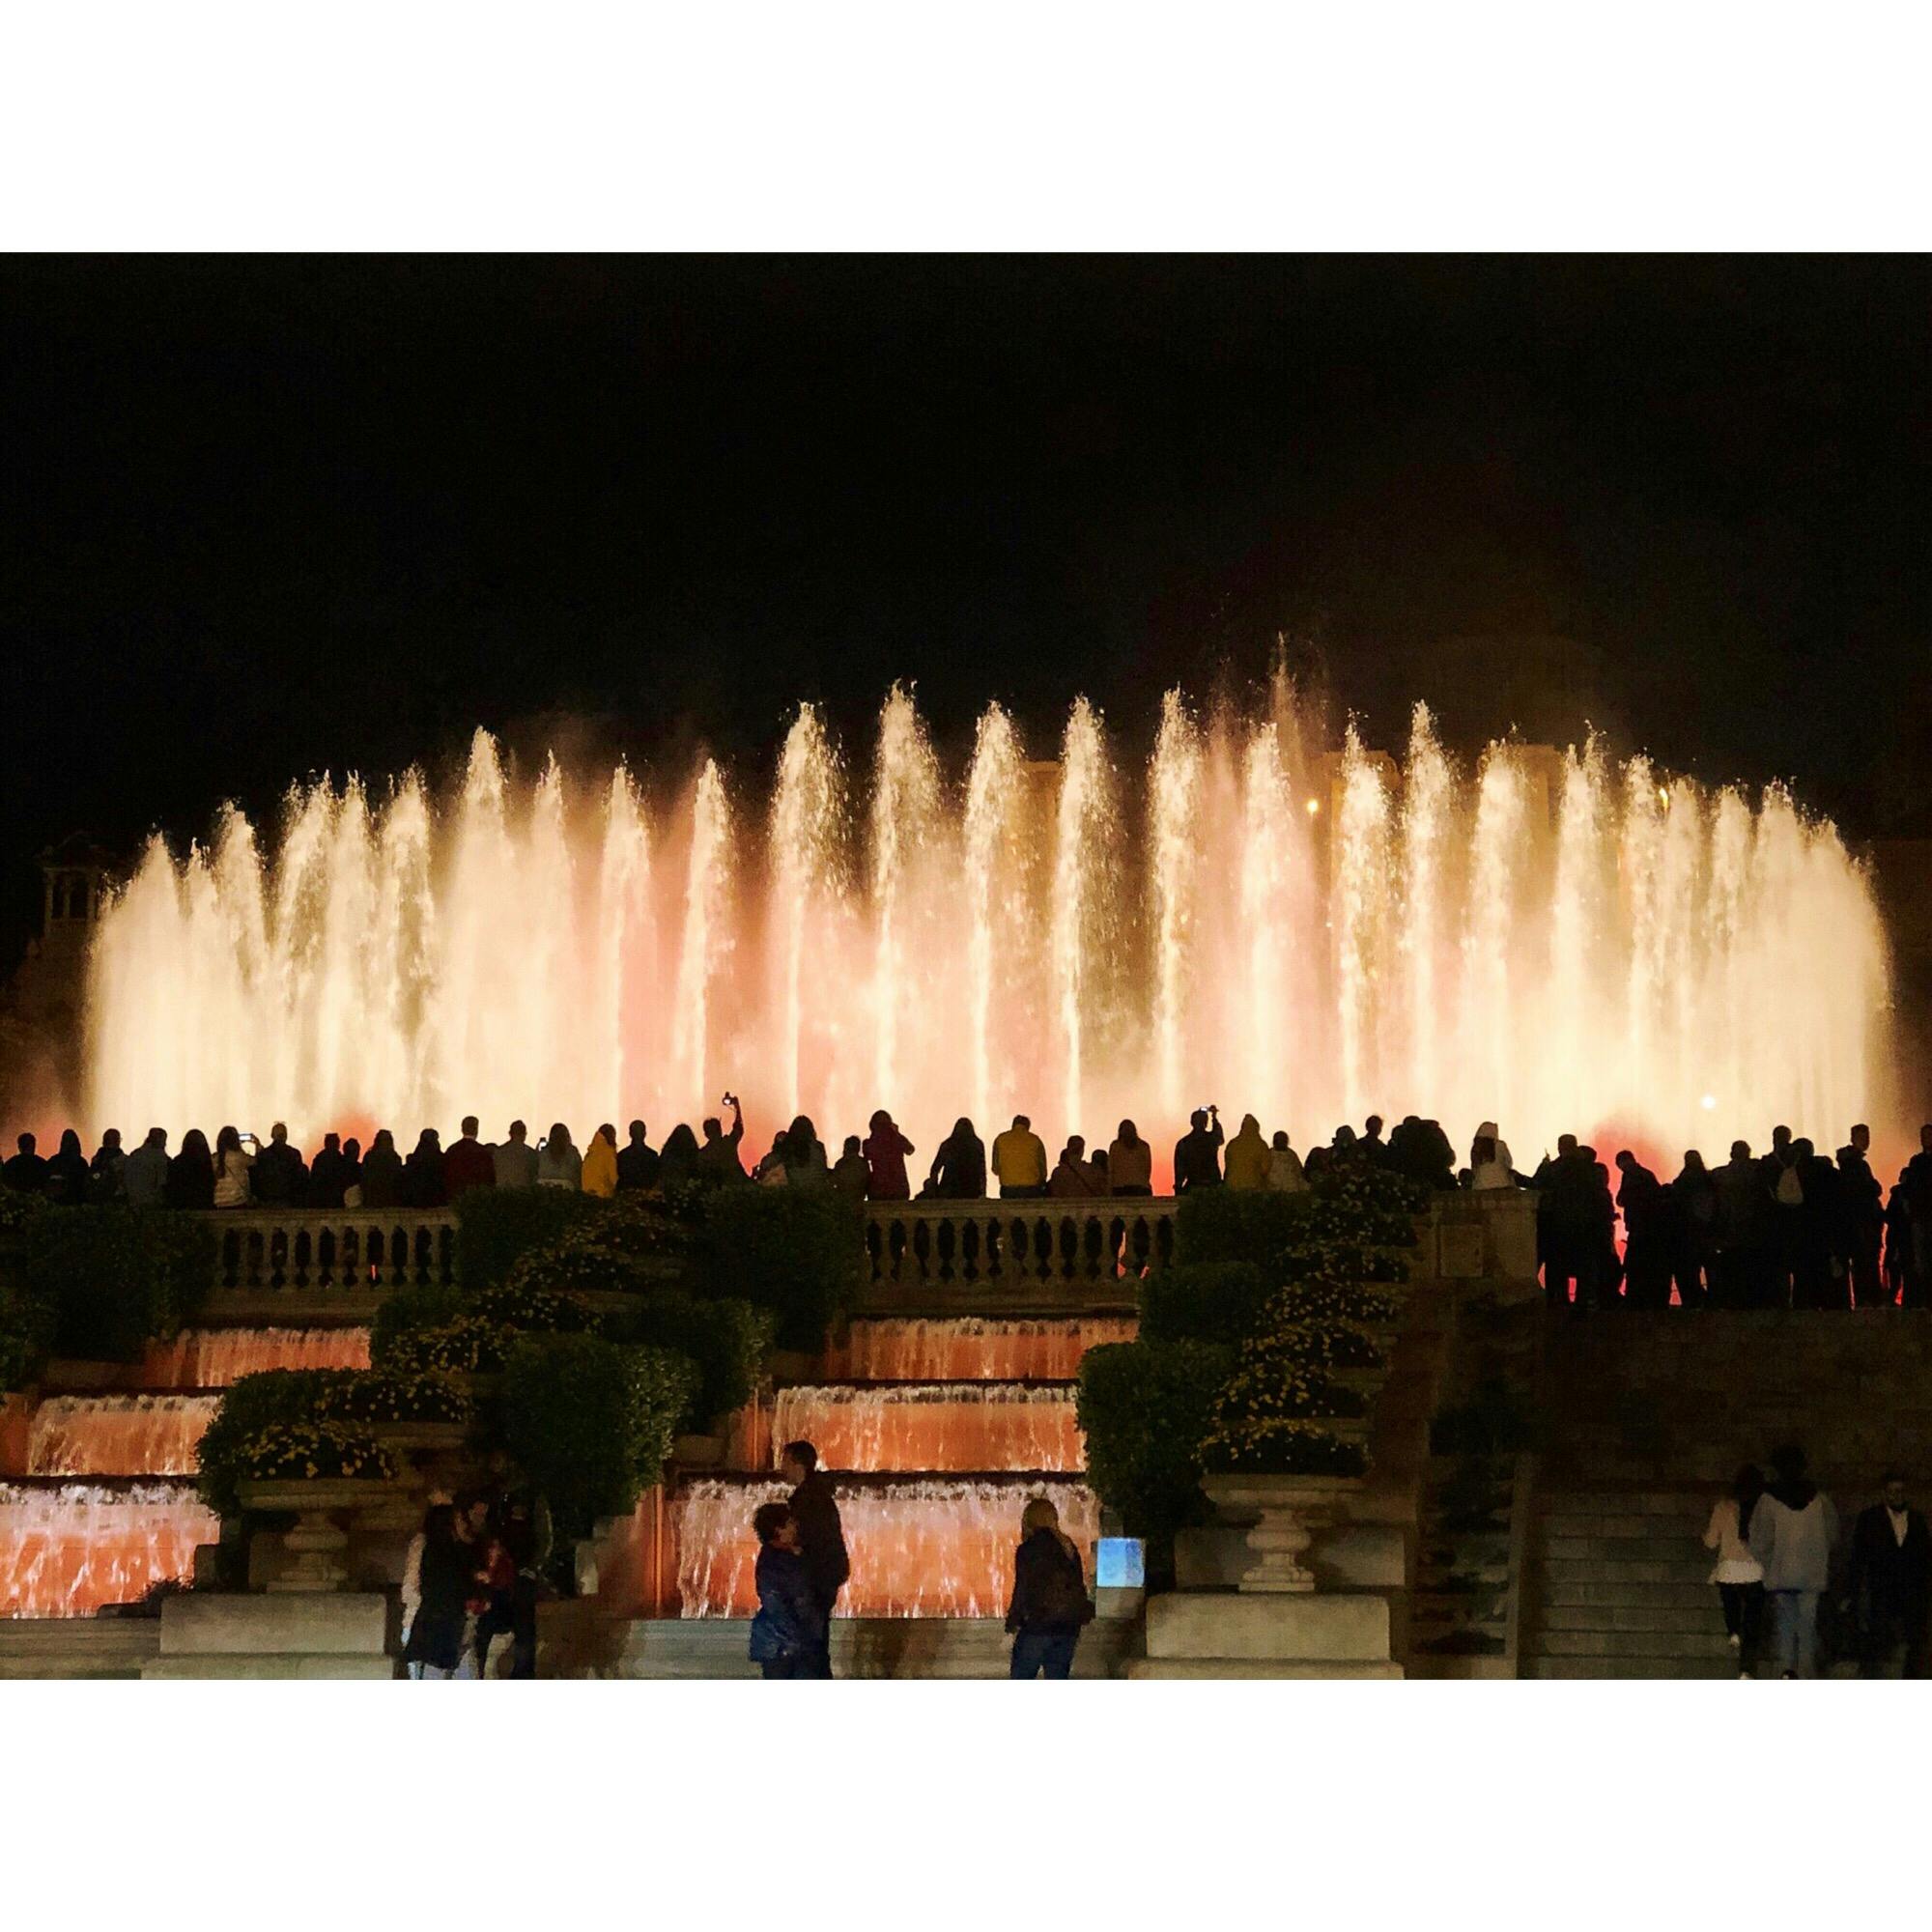 マジカ噴水 Font Magica の投稿写真 感想 みどころ バルセロナのスペイン広場にある マジック噴水 ヨーロッパ随 トリップノート